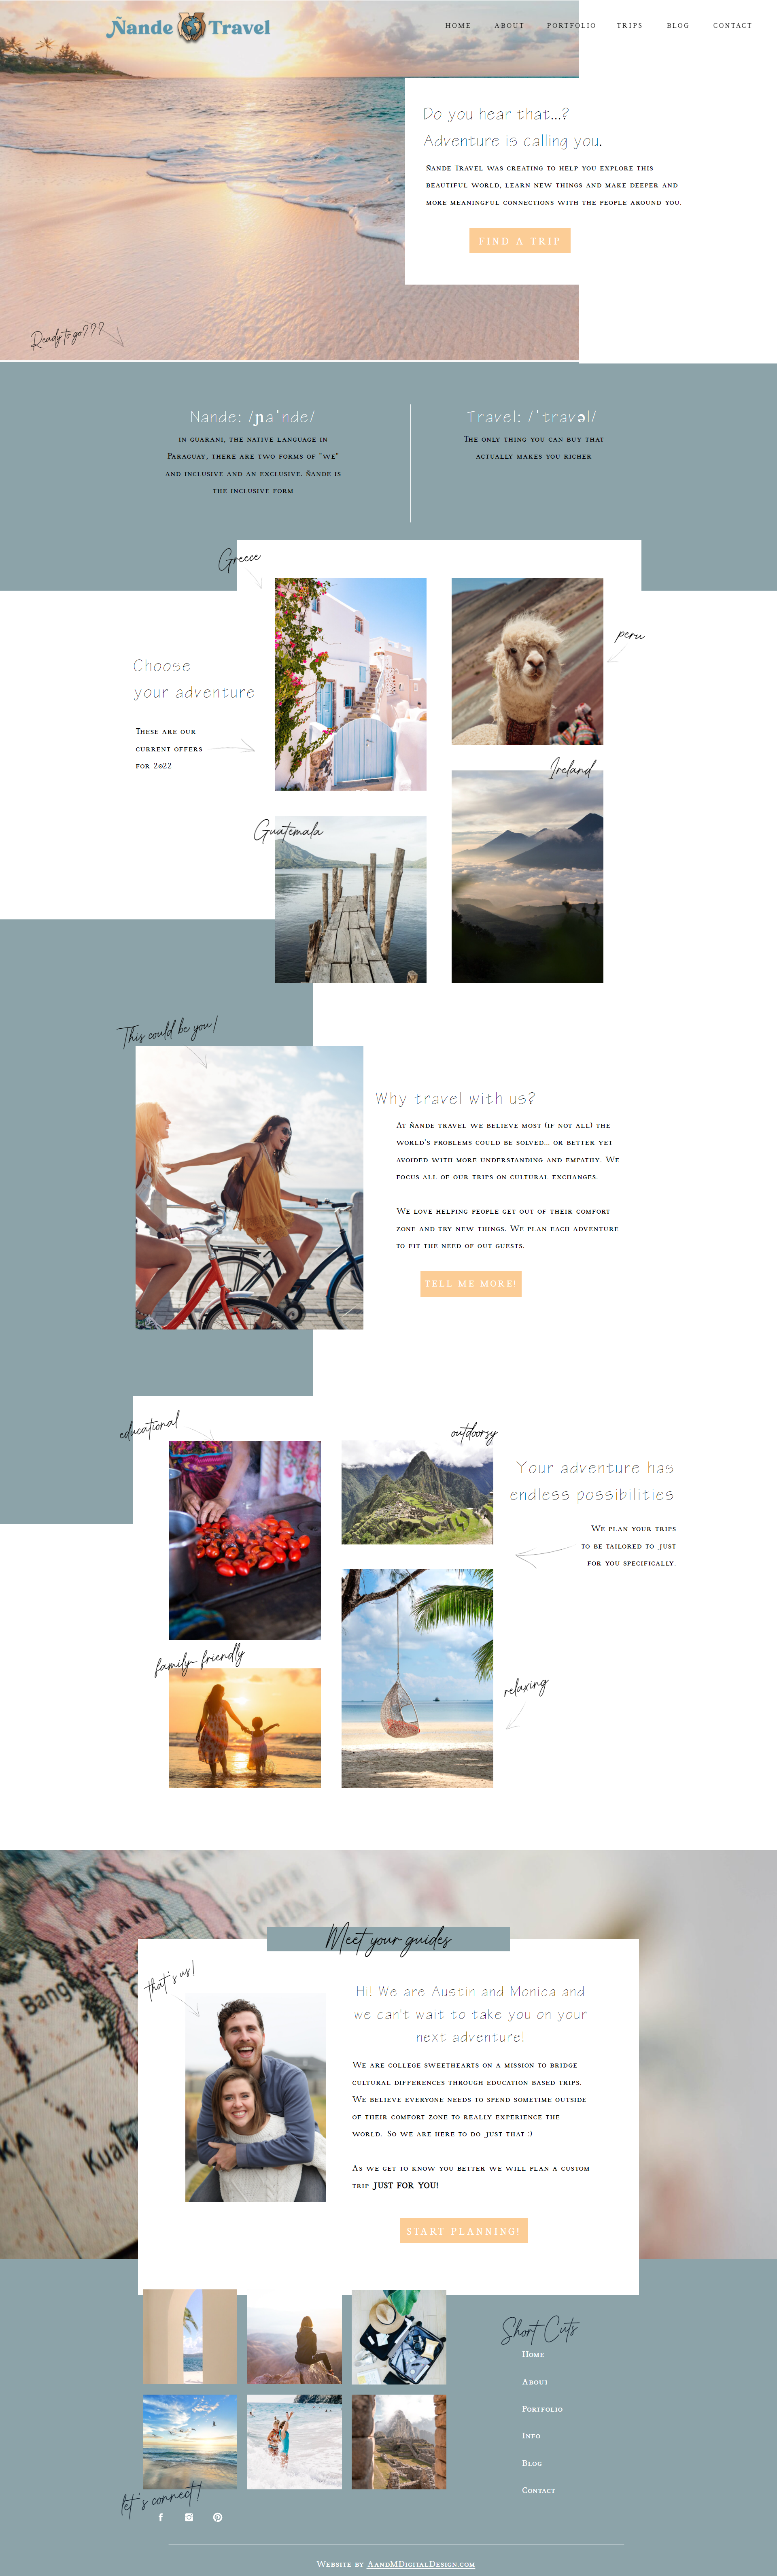 Monica's website homepage for Nande Travel (a good effort ;))